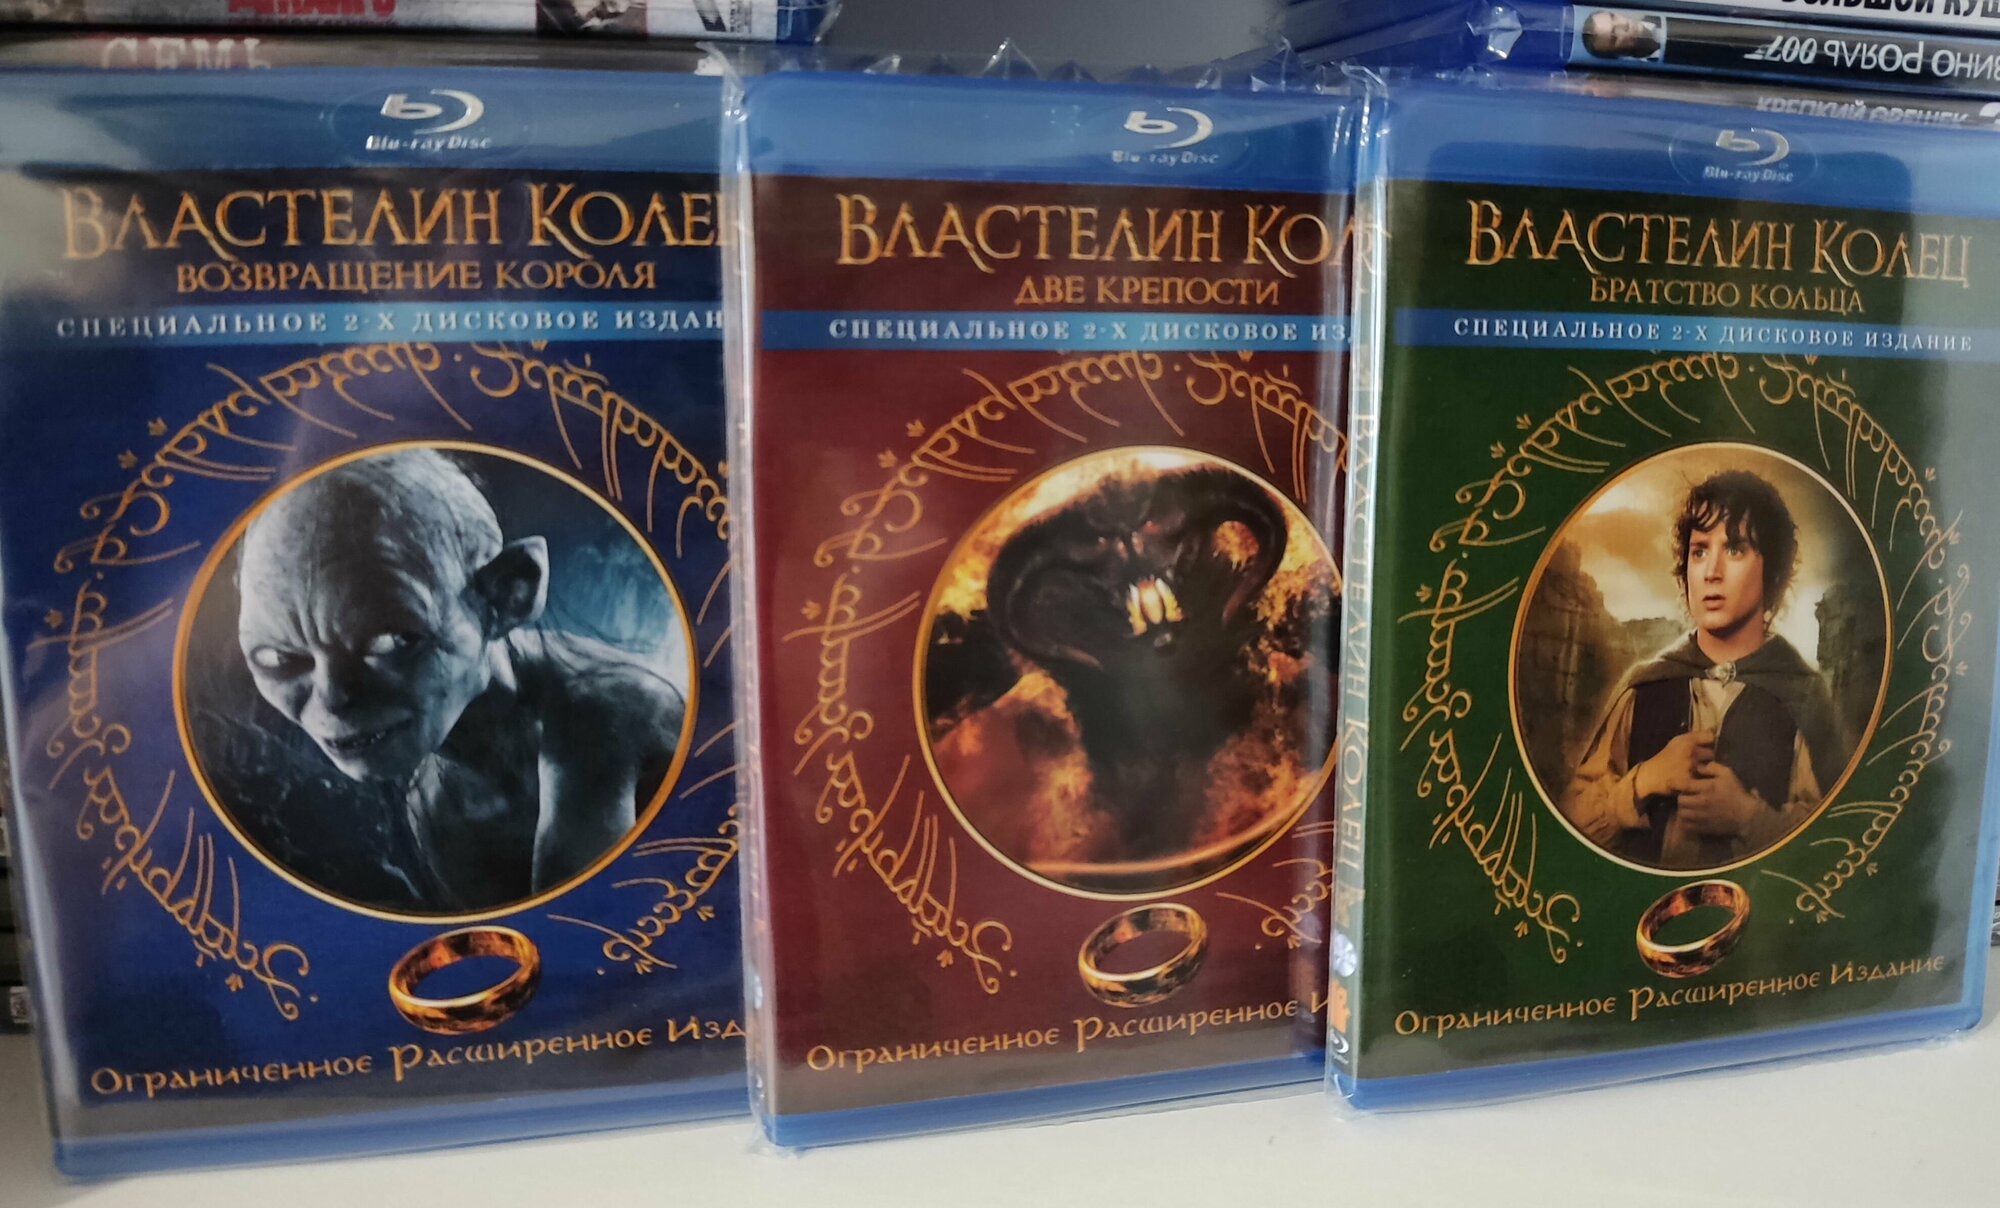 Властелин Колец Ограниченное Расширенное издание 6 Blu-ray(блю-рей) дисков